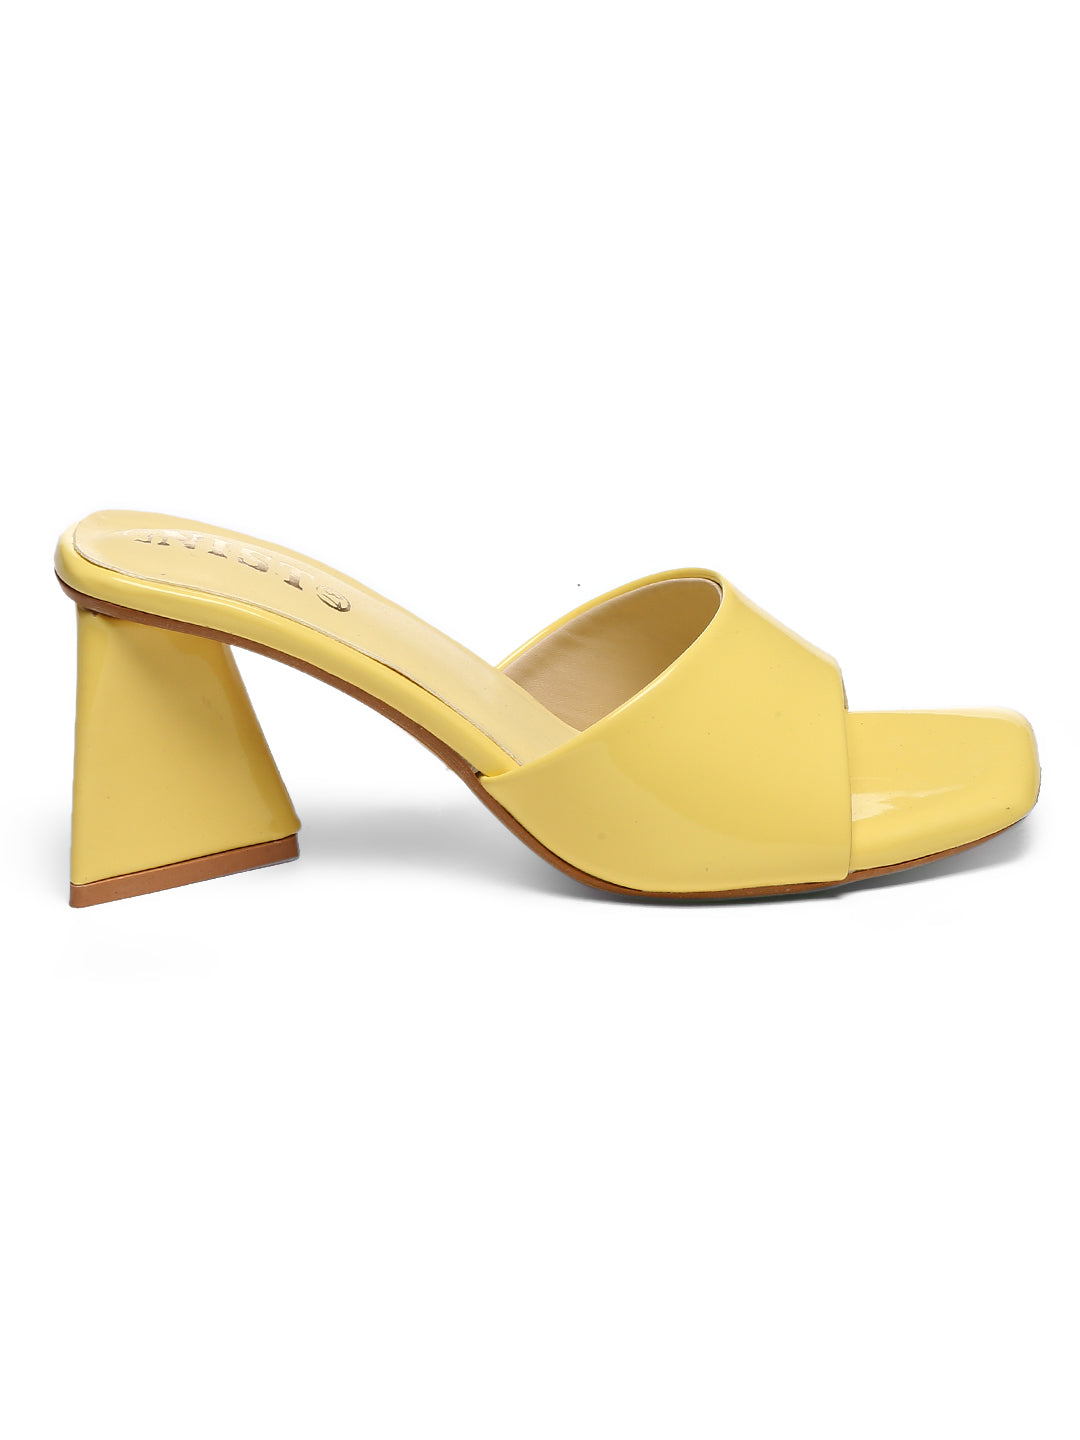 GNIST Yellow Chuncky Patent Block Heel